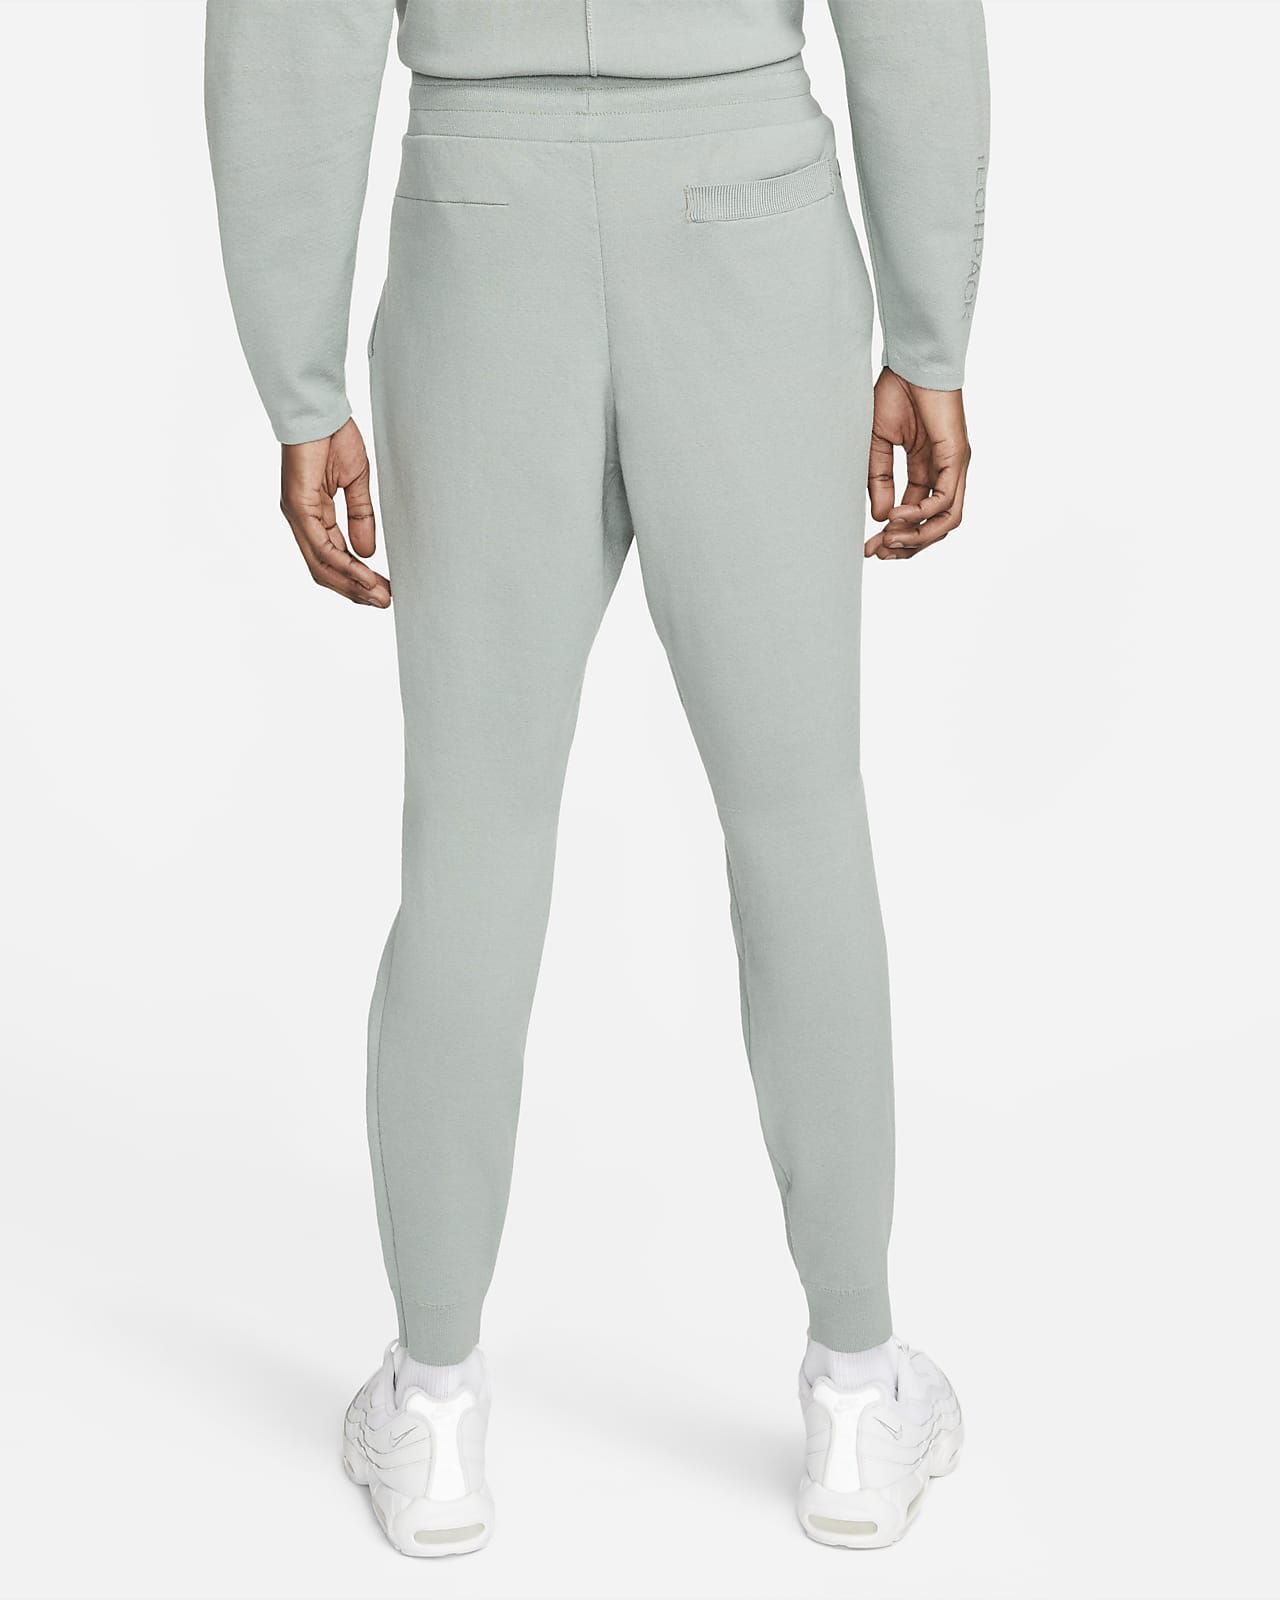 Antagonisme Opdage gå på pension Nike Sportswear Therma-FIT ADV Tech Pack Men's Tech Fleece Engineered  Trousers. Nike LU